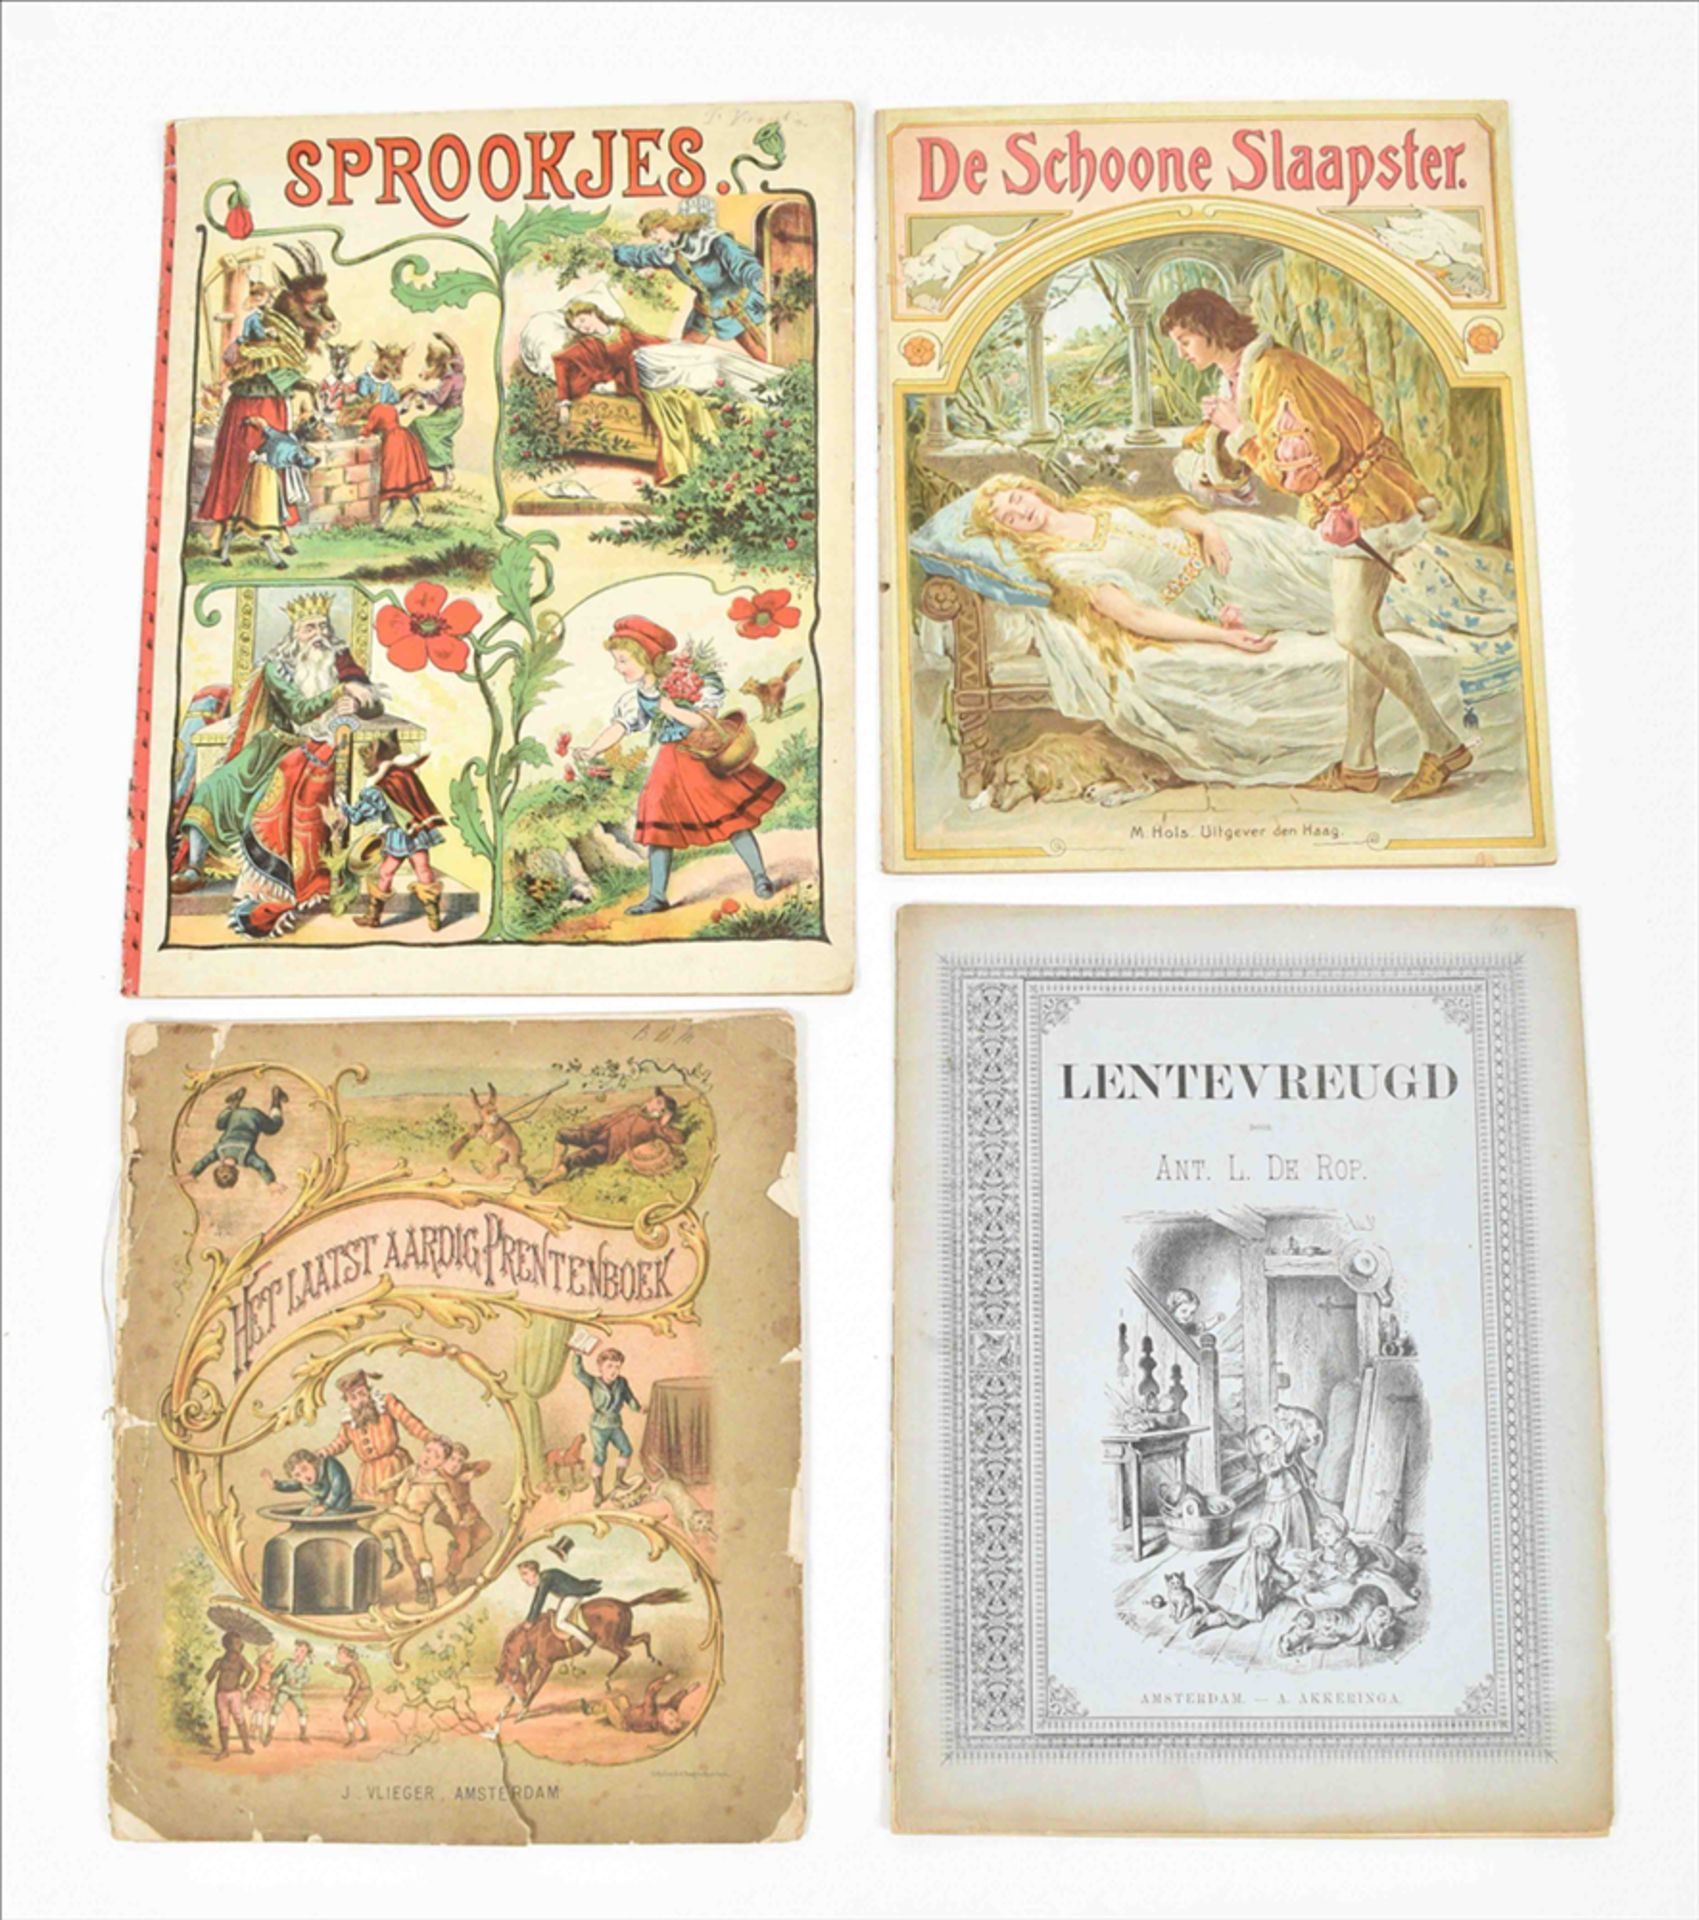 [Black interest] Fourteen late 19th century Dutch children's books: (1) Tien kleine nikkertjes - Image 11 of 16